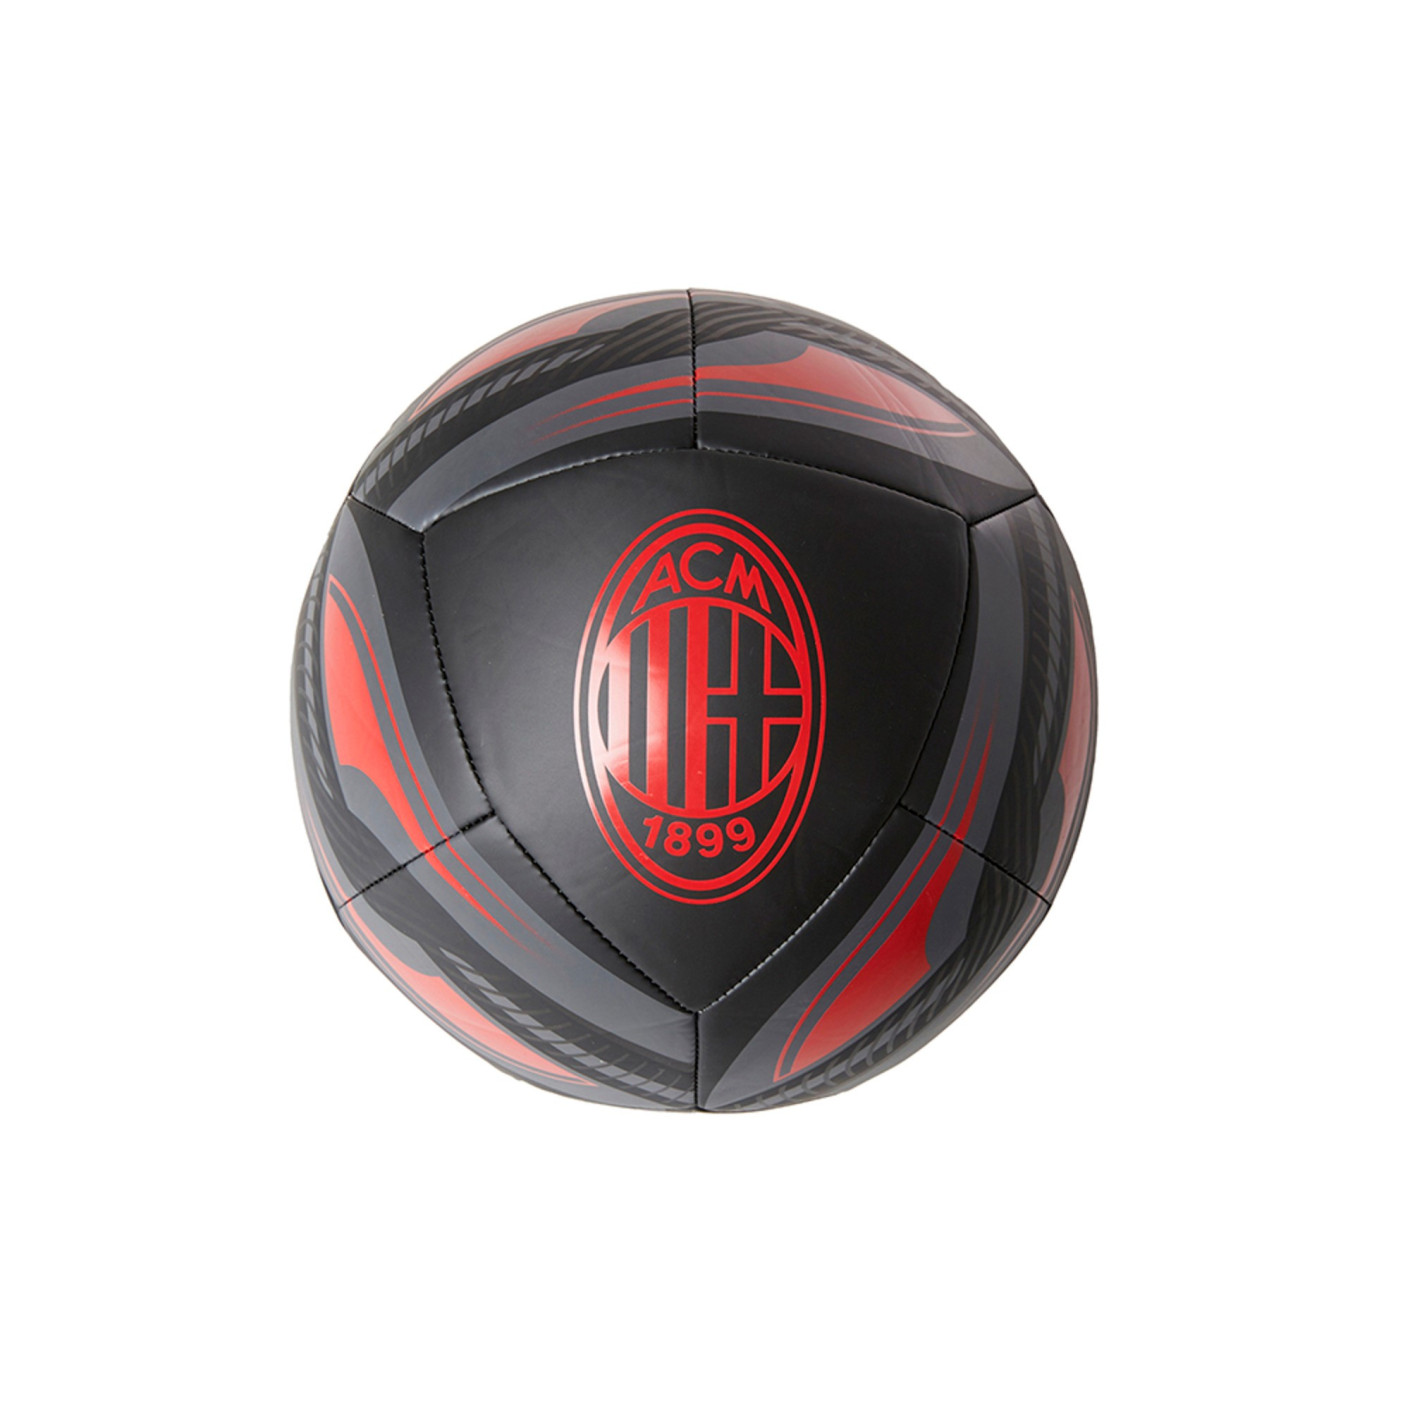 Ballon de football Puma AC Milan Icone Taille 5 Noir/rouge